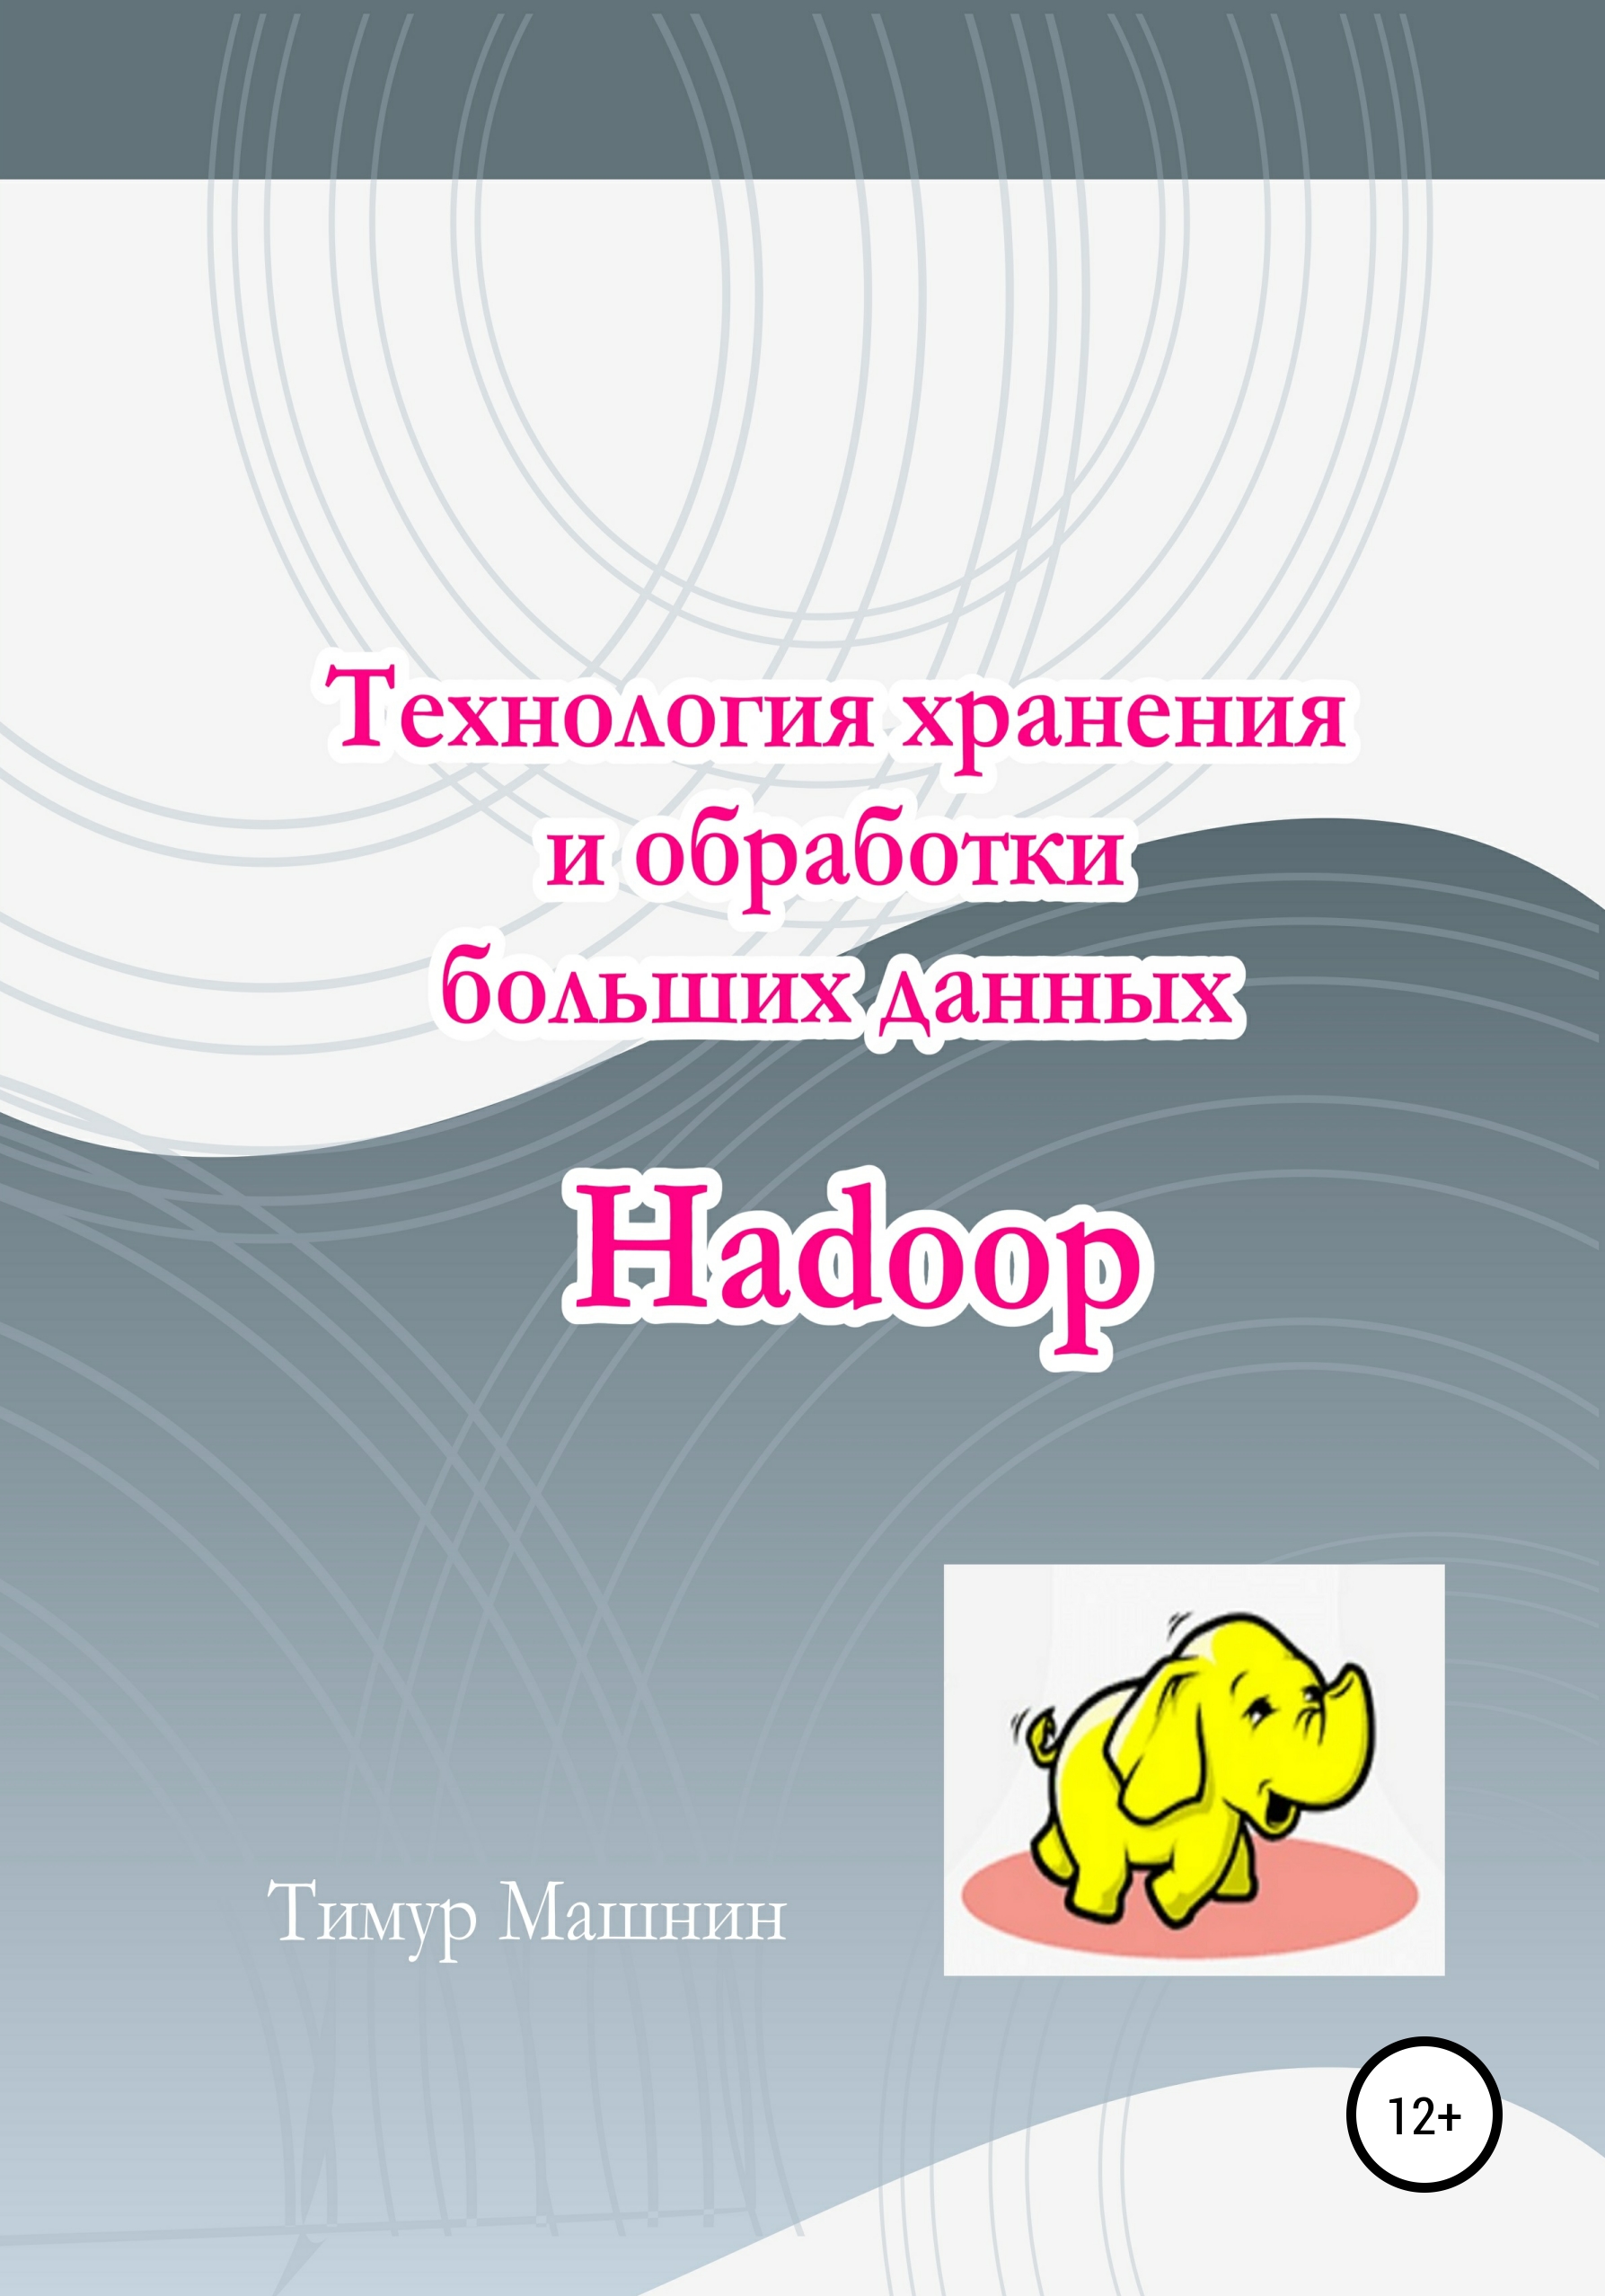 Книга  Технология хранения и обработки больших данных Hadoop созданная Тимур Машнин может относится к жанру интернет, книги о компьютерах, программирование. Стоимость электронной книги Технология хранения и обработки больших данных Hadoop с идентификатором 65077172 составляет 490.00 руб.